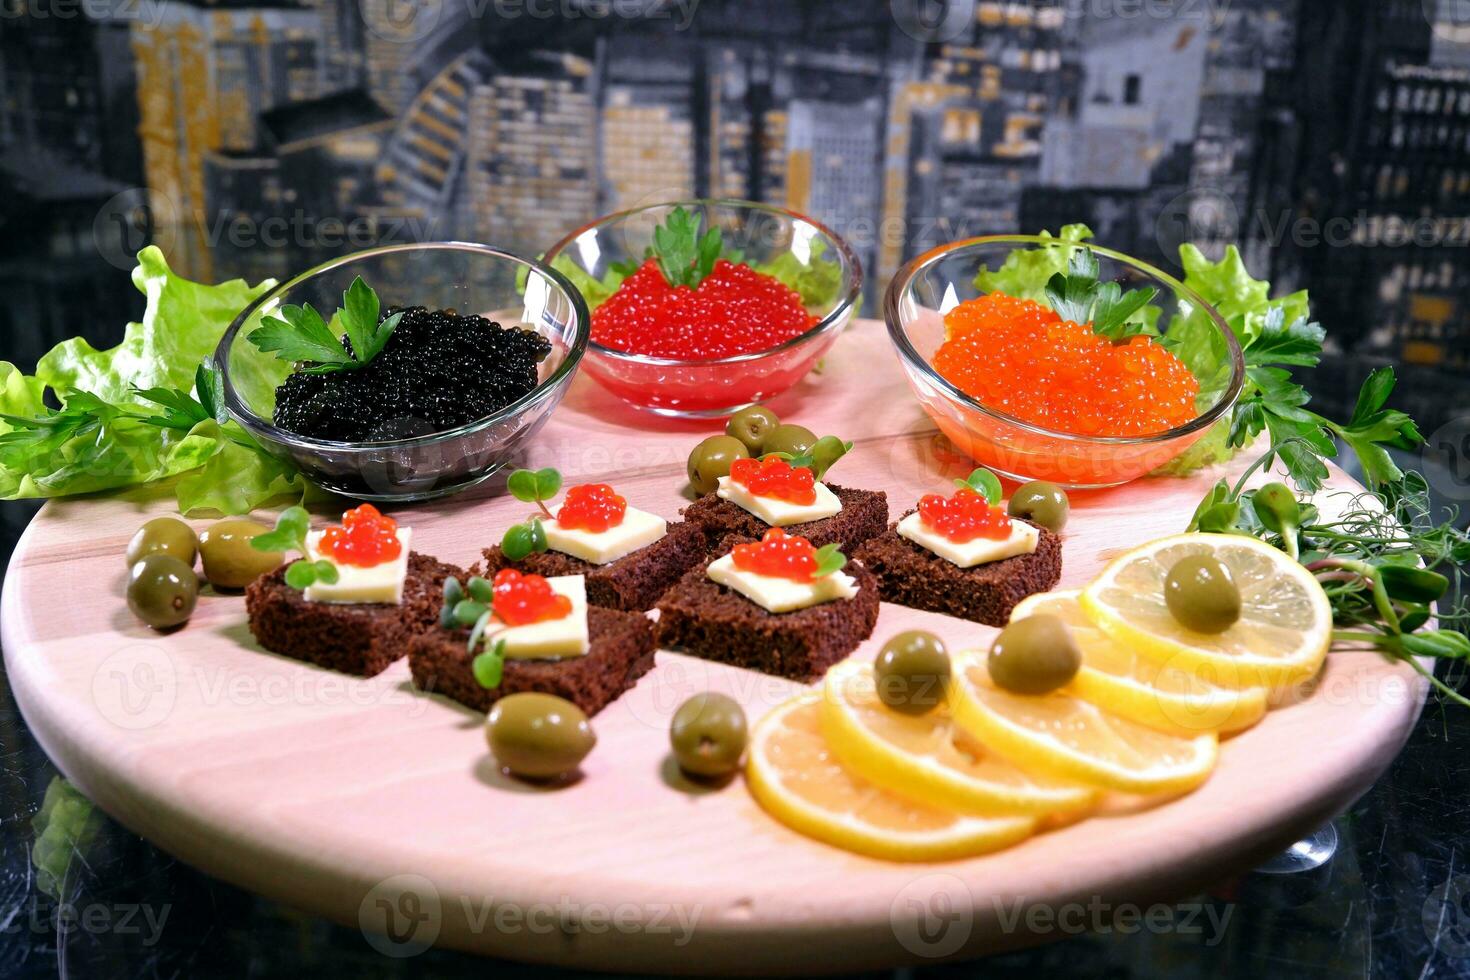 negro rojo caviar en sándwiches, decorado con verdor. restaurante comida desayuno cena almuerzo foto